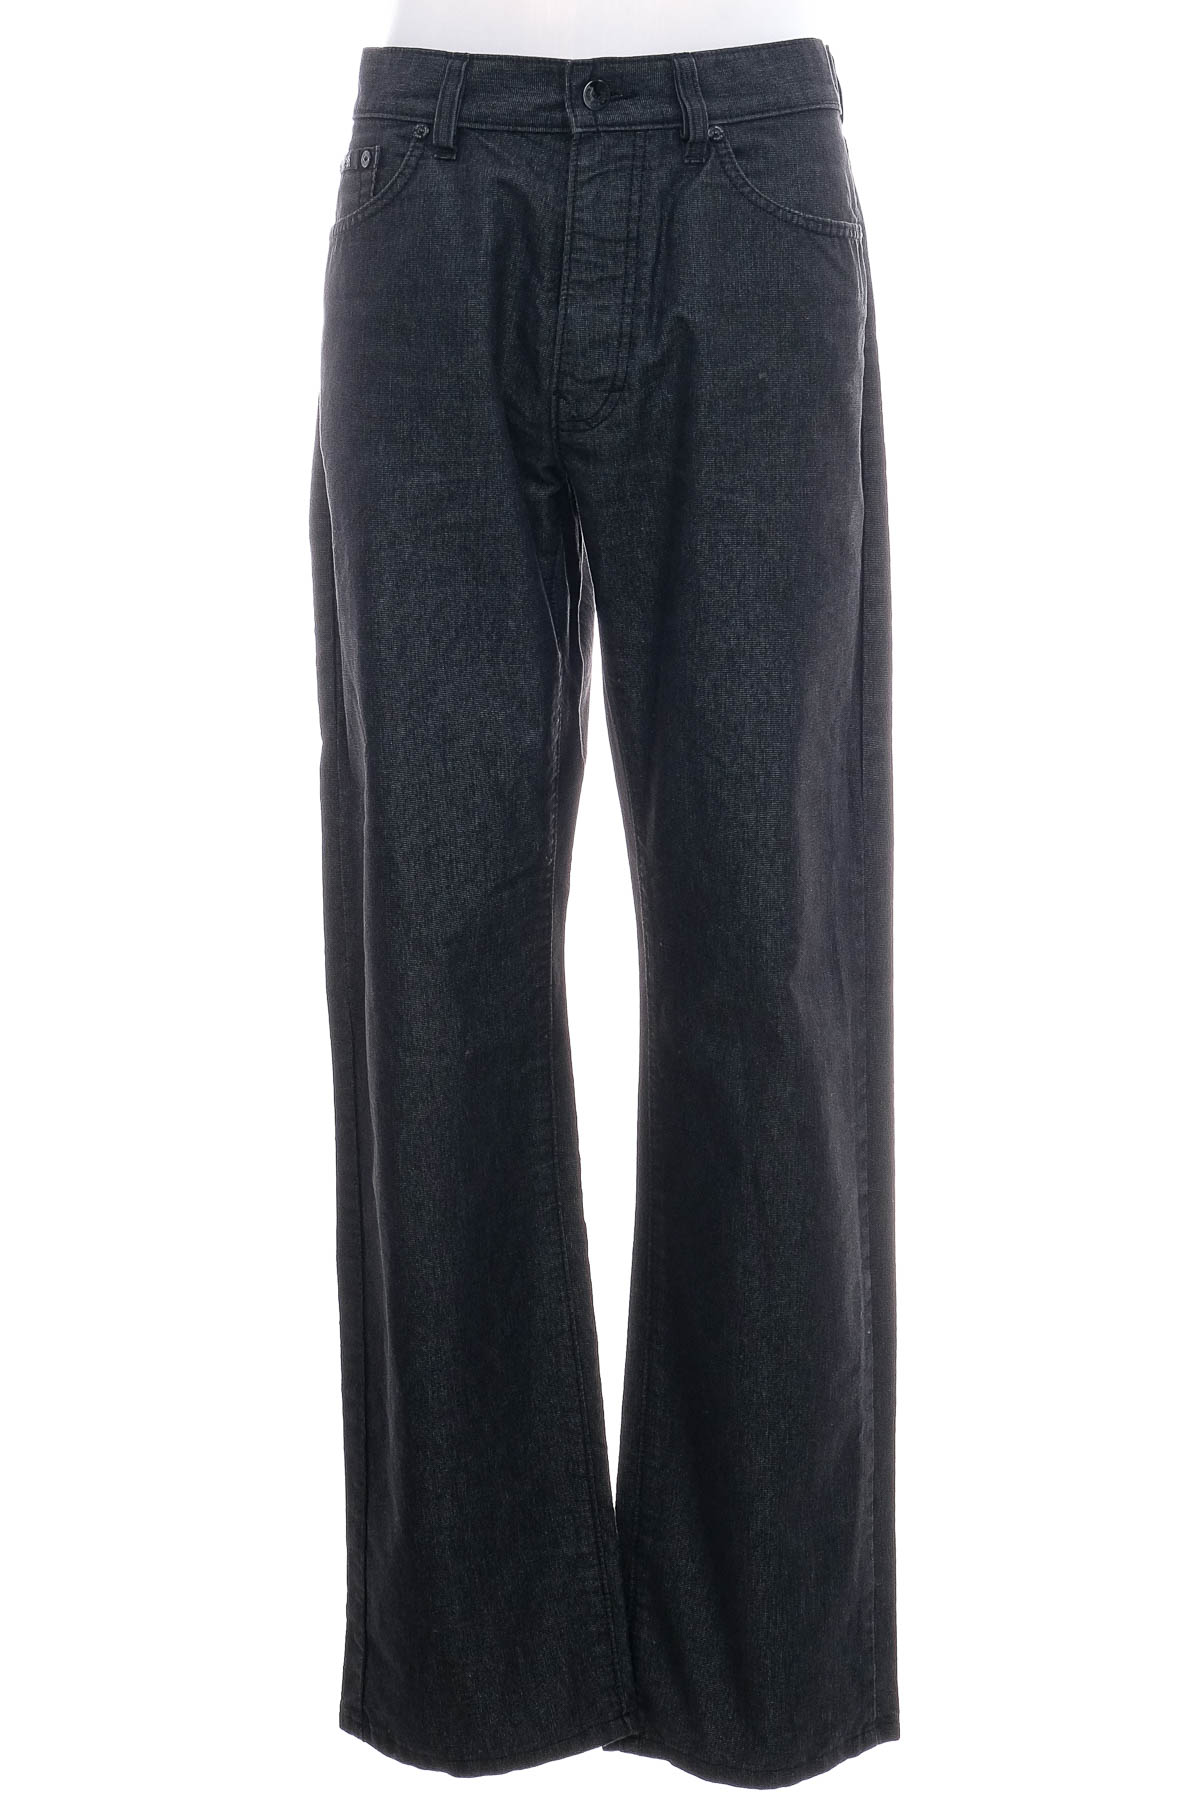 Jeans pentru bărbăți - HUGO BOSS - 0